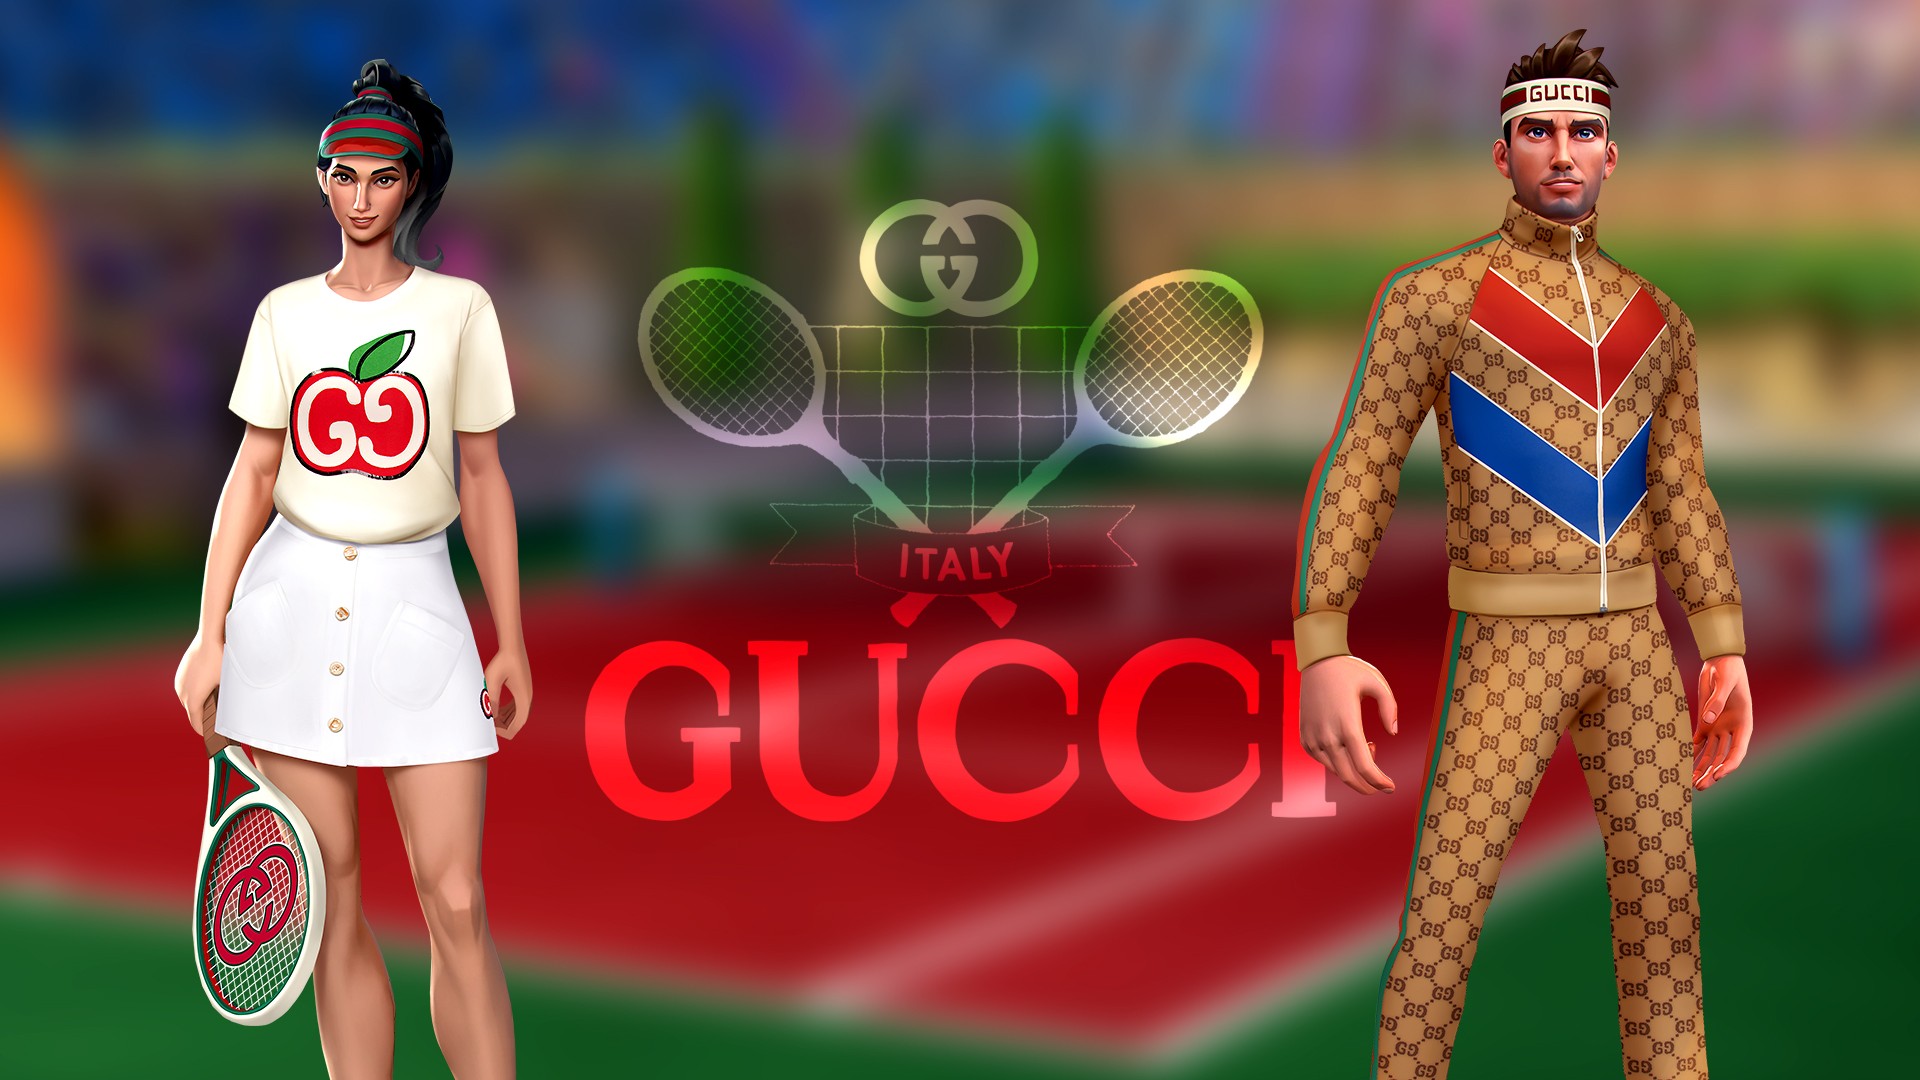 Gucci criou looks e torneio especial para o jogo Tennis Clash (Foto: Divulgação)